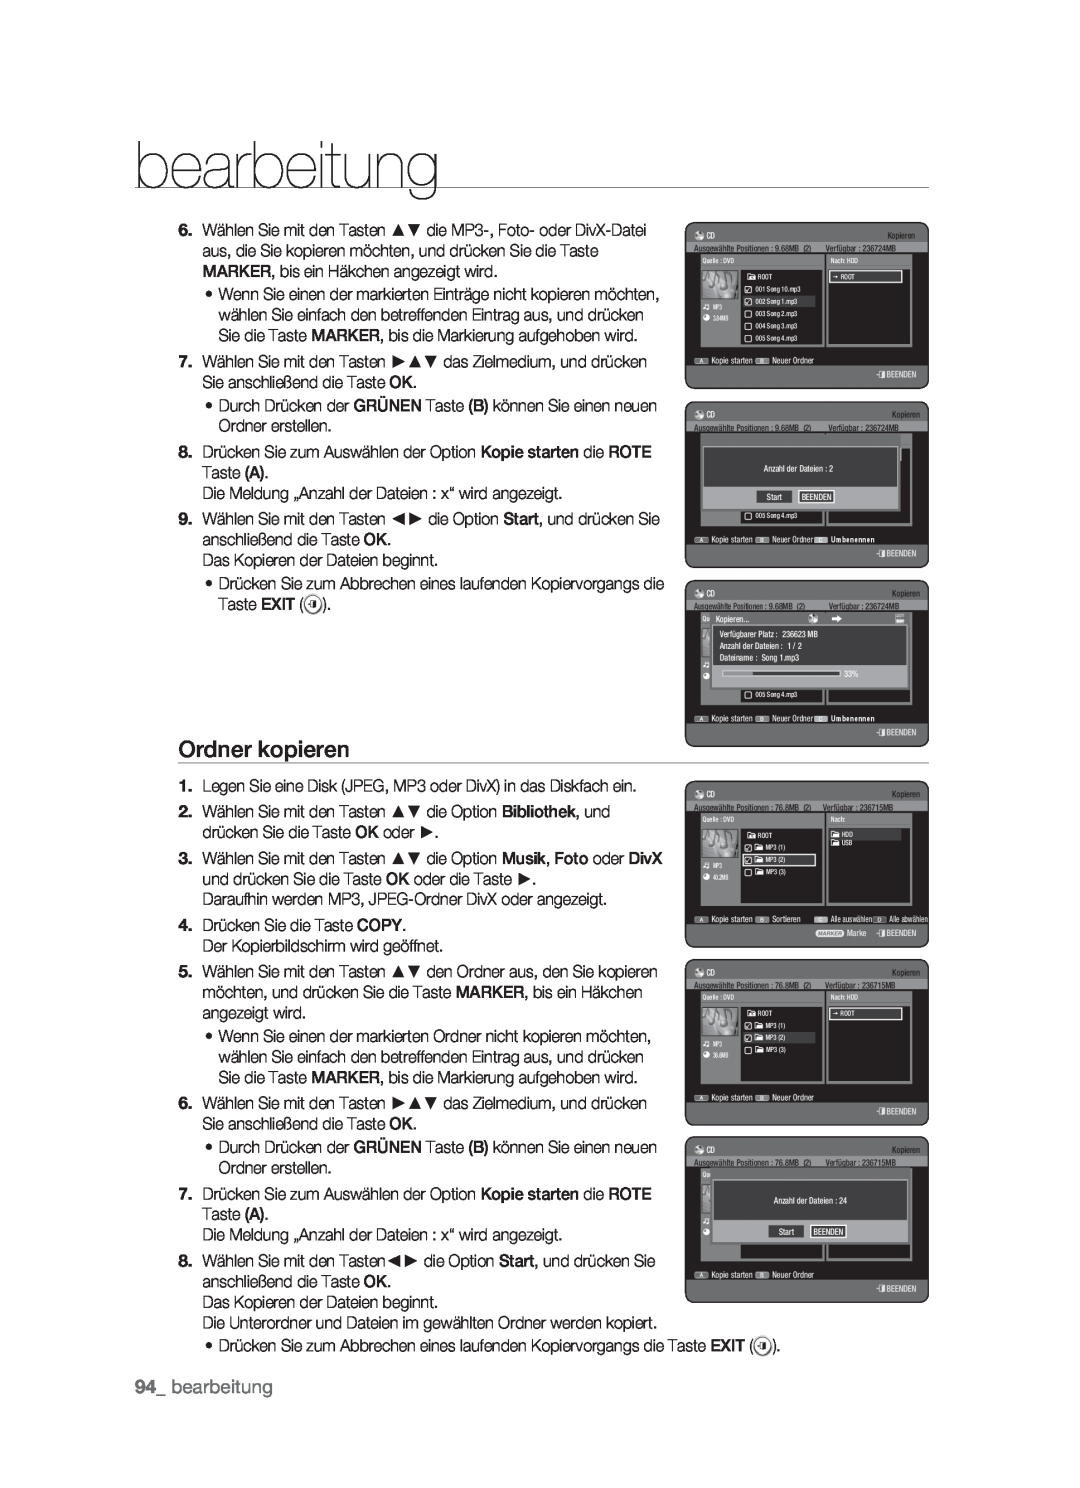 Samsung DVD-HR773/XEG, DVD-HR773/XEN, DVD-HR773/XEB, DVD-HR773/AUS manual Ordner kopieren, bearbeitung 